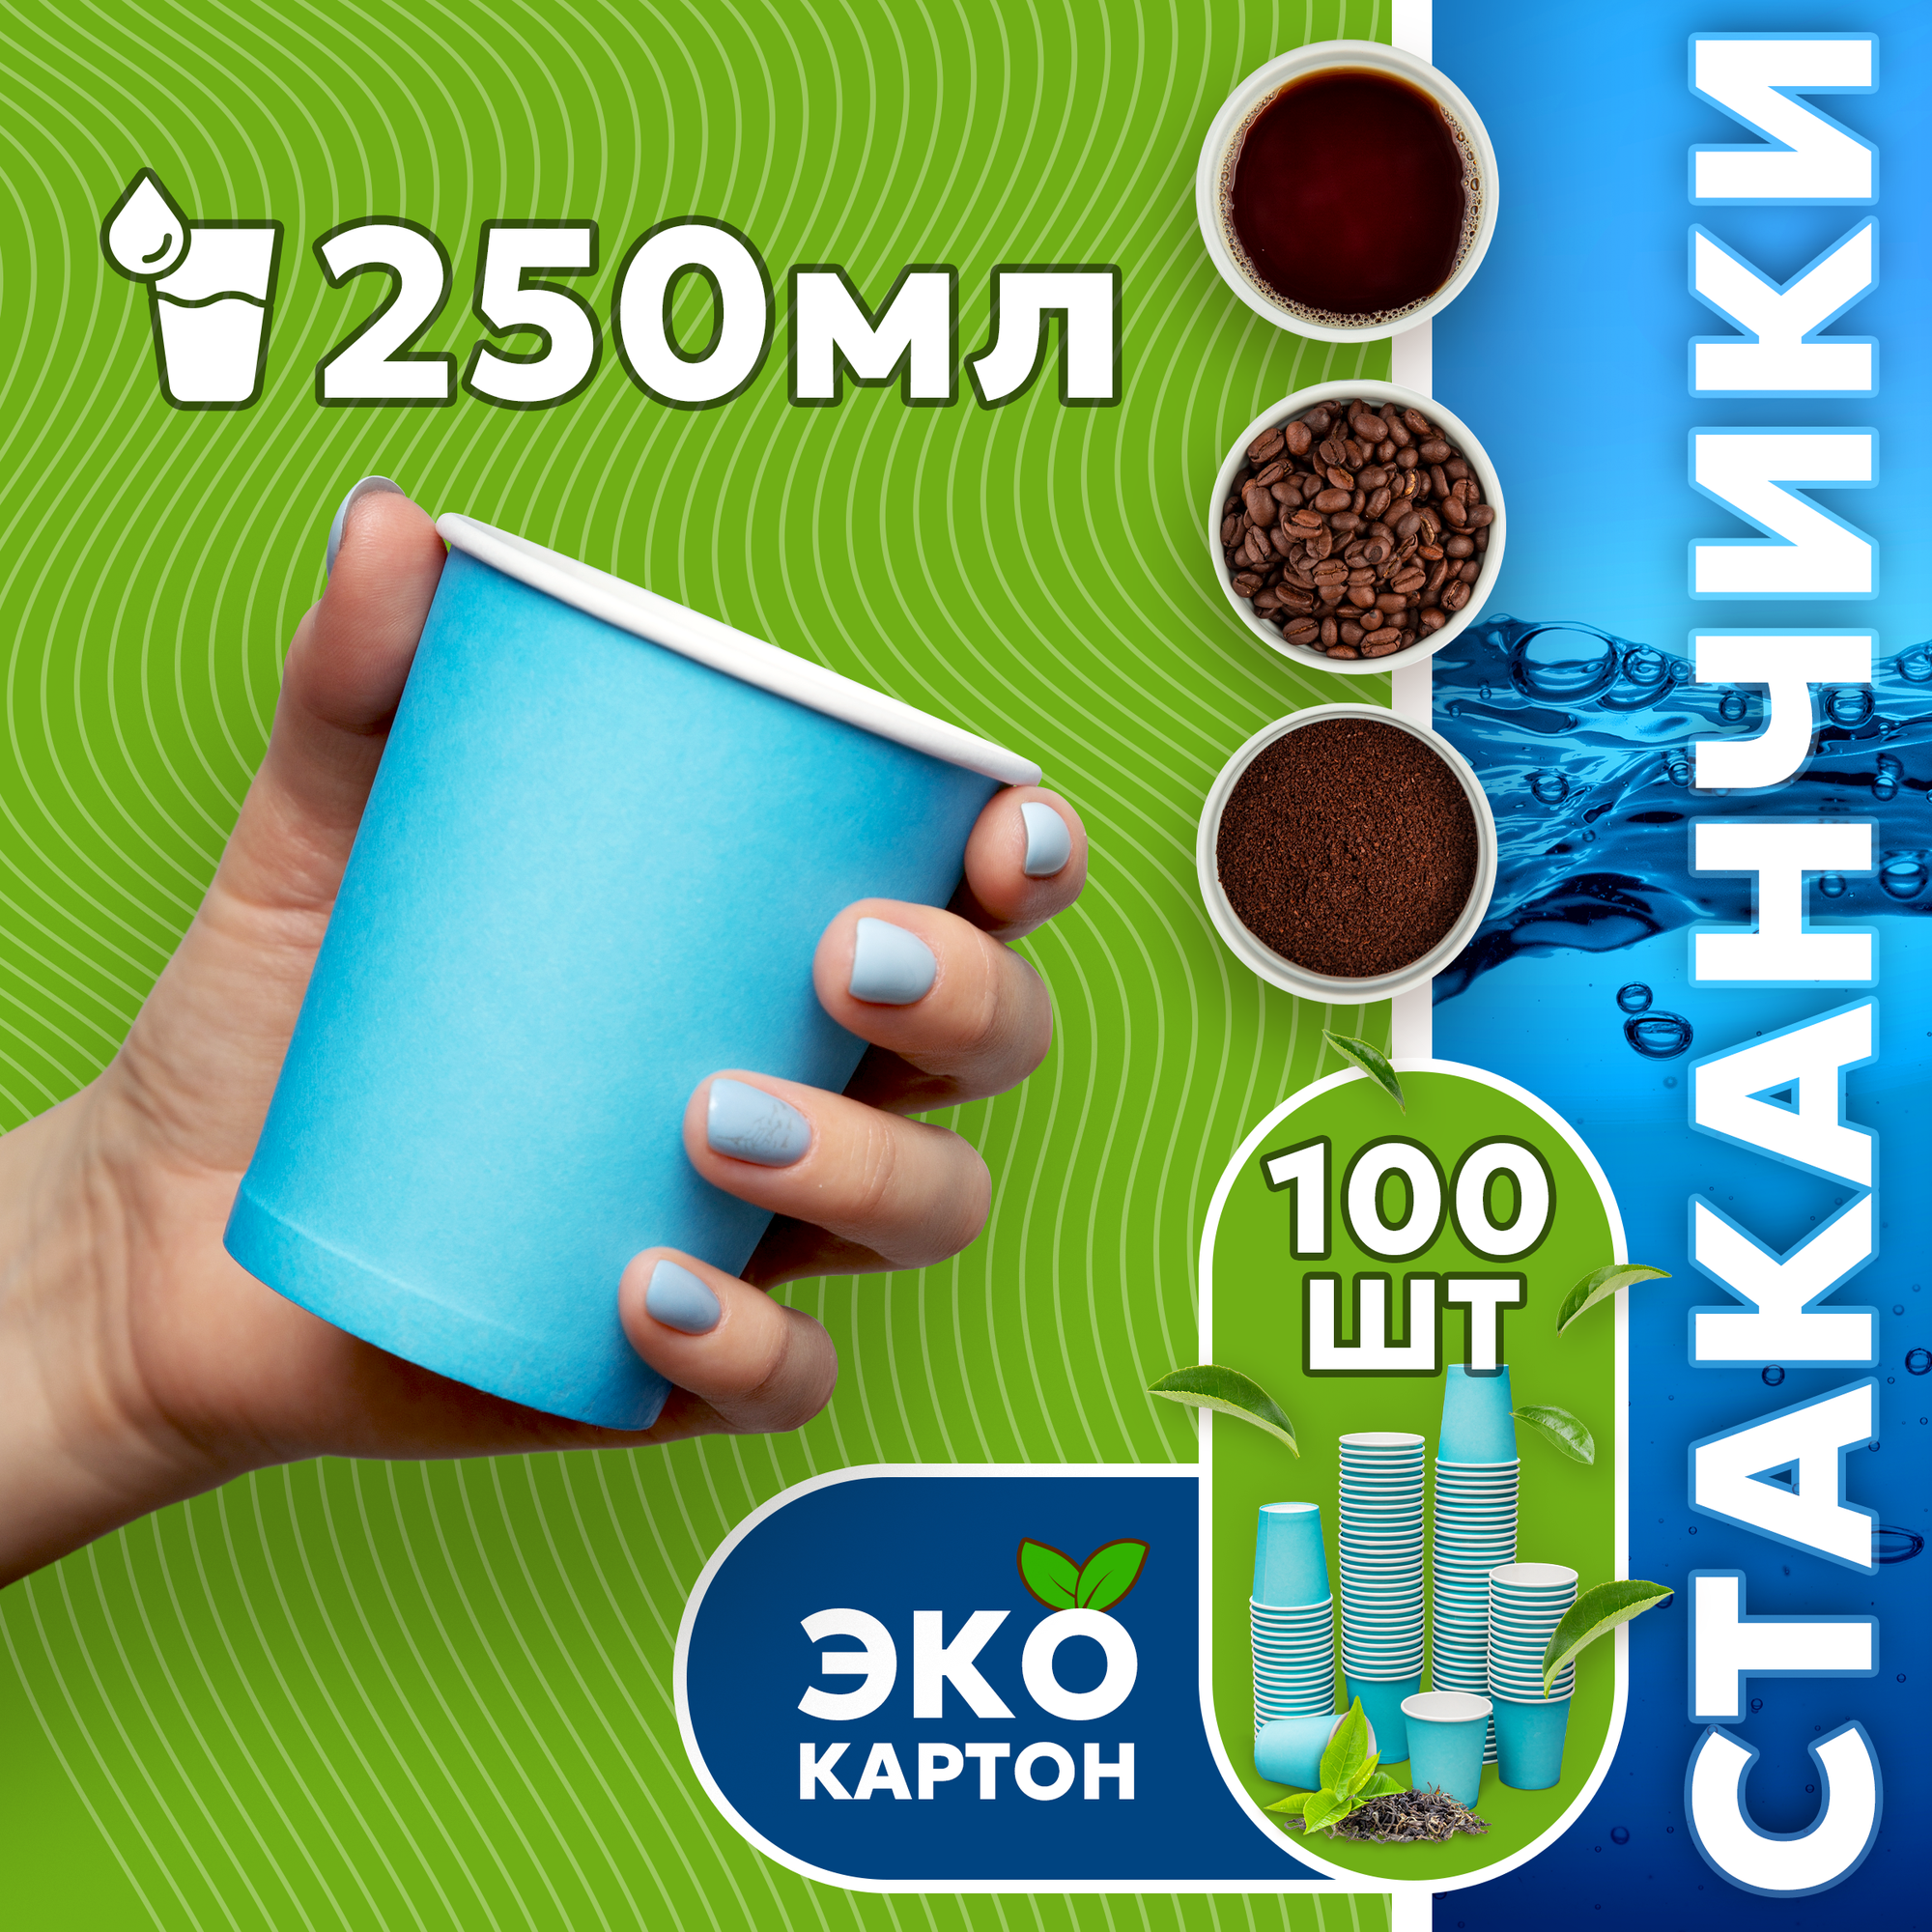 Набор одноразовых стаканов гриникс, объем 250 мл 100 шт. голубые, бумажные, однослойные, для кофе, чая, холодных и горячих напитков